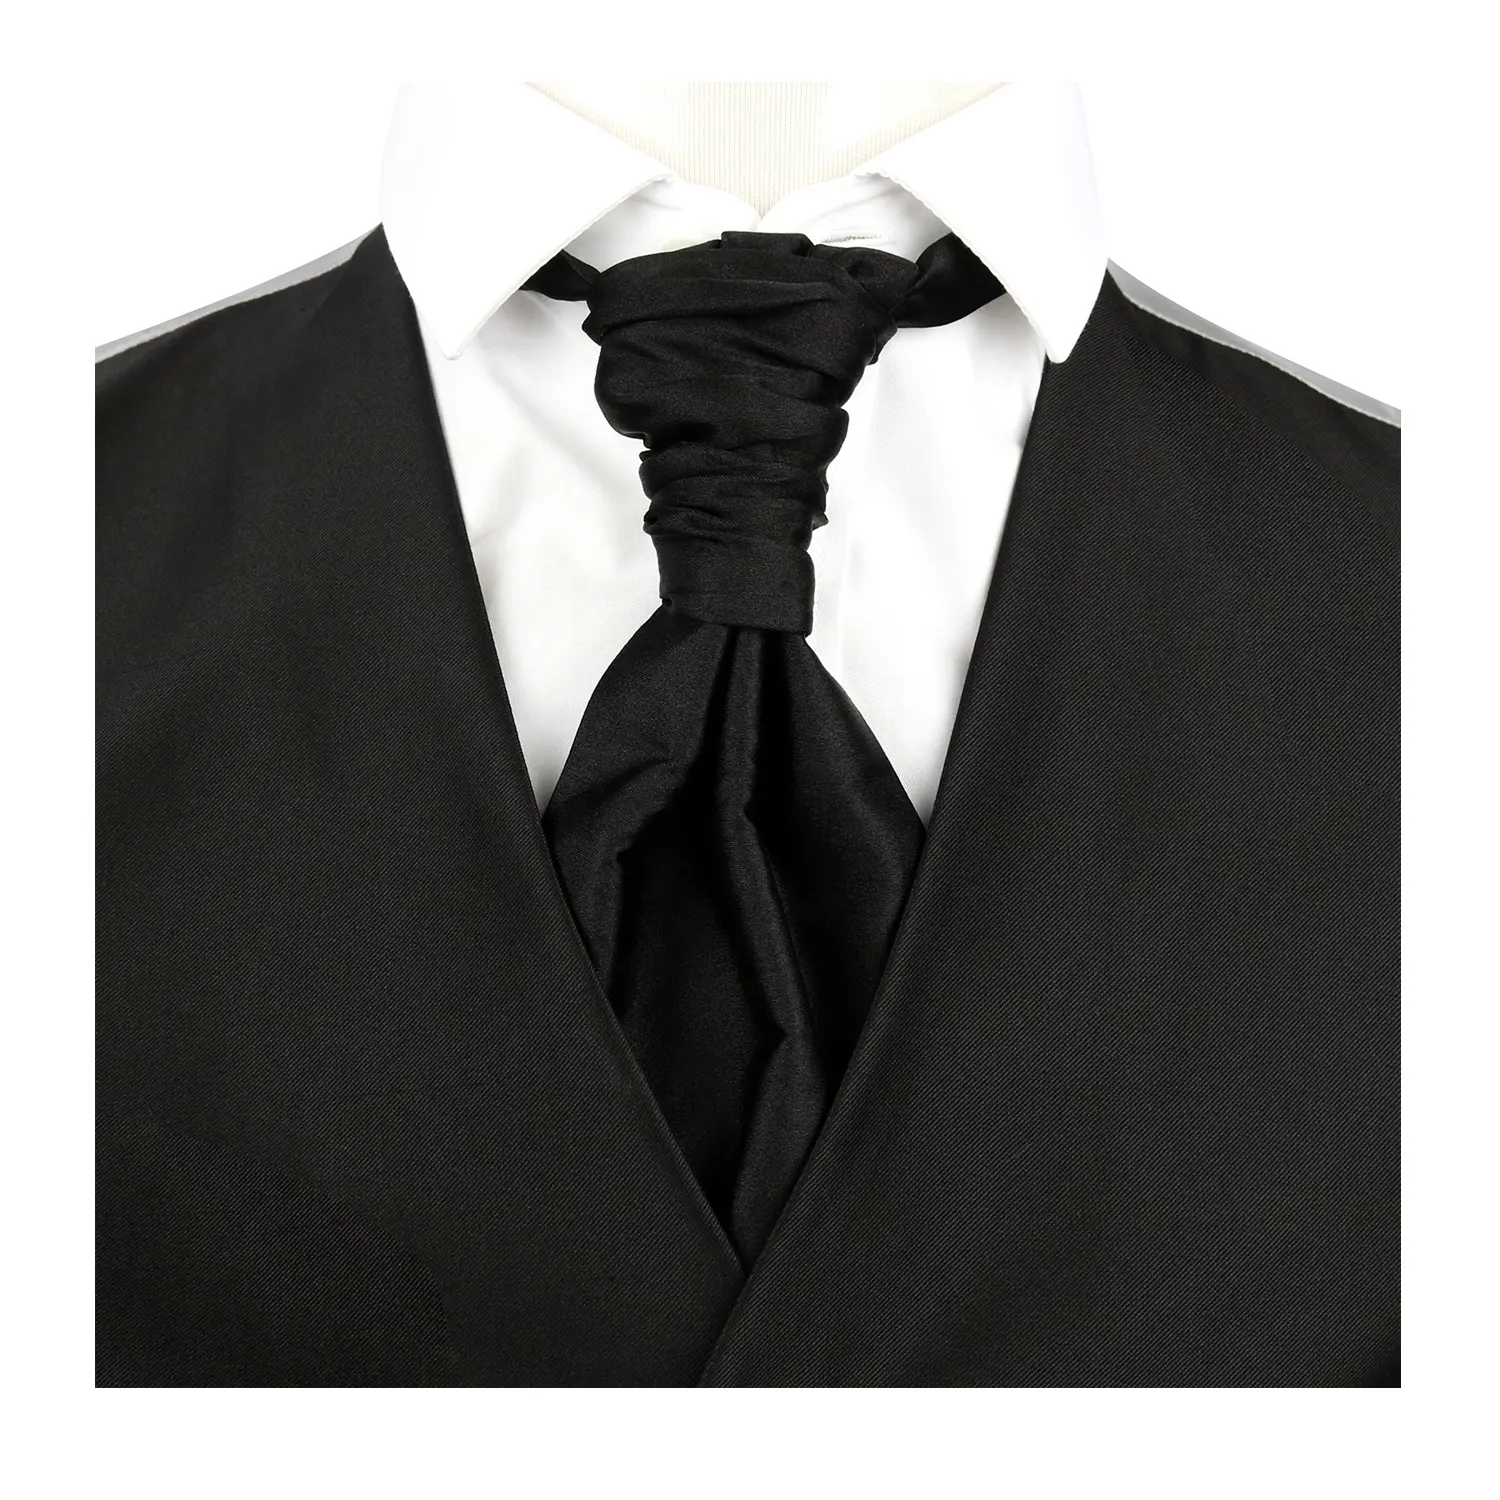 ربطة عنق منظم ربطات العنق لمطابقة القمصان 8 ربطة عنق بوليستر ربطة عنق للعريس ملابس زفاف